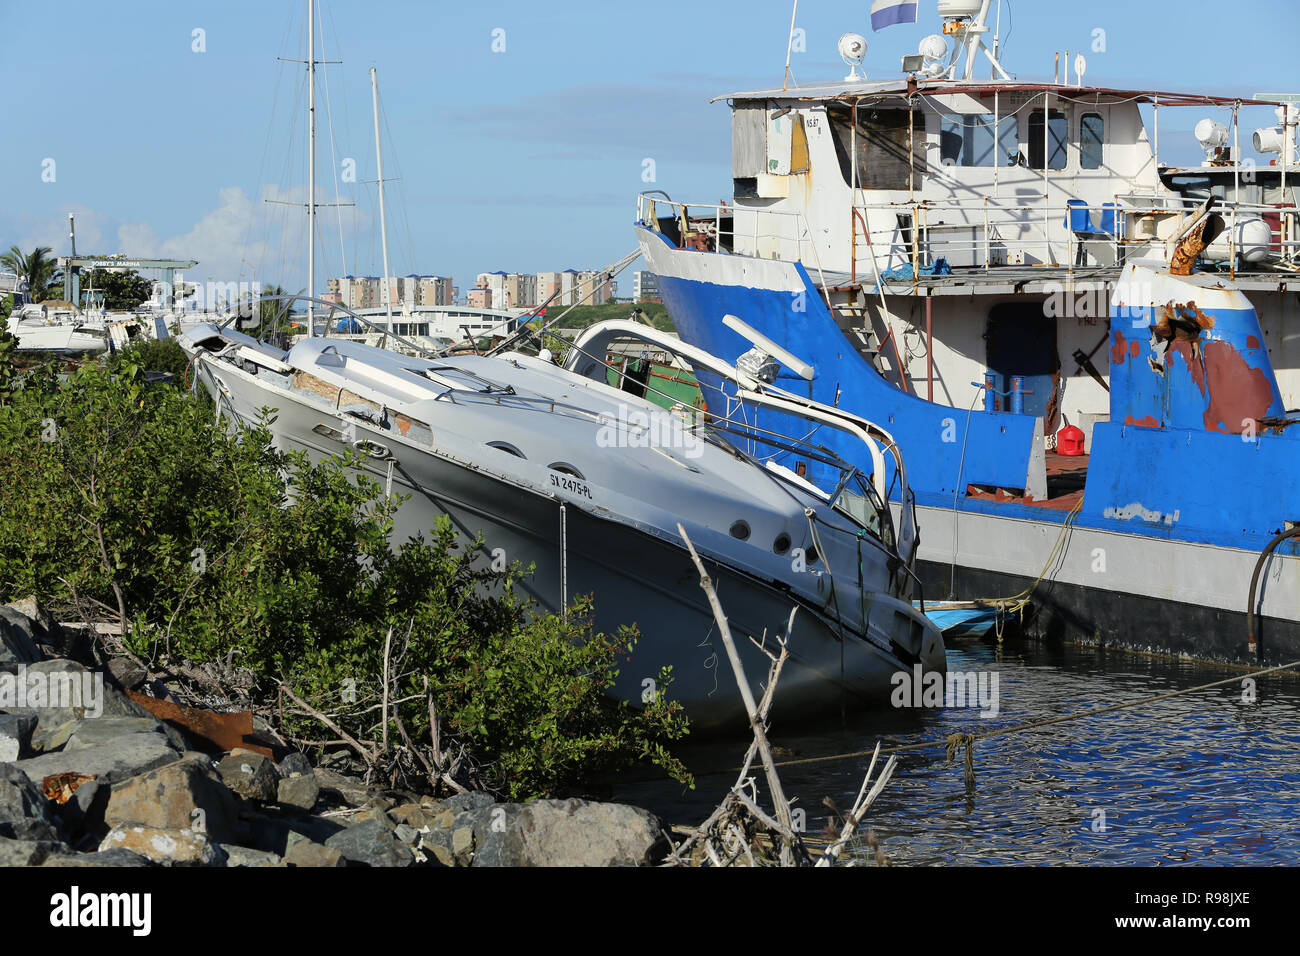 L'ouragan l'Irma a fait des ravages à travers les Caraïbes orientales en 2017 et la preuve est encore visible sur les eaux de la République dominicaine à la fin de 2018 Banque D'Images